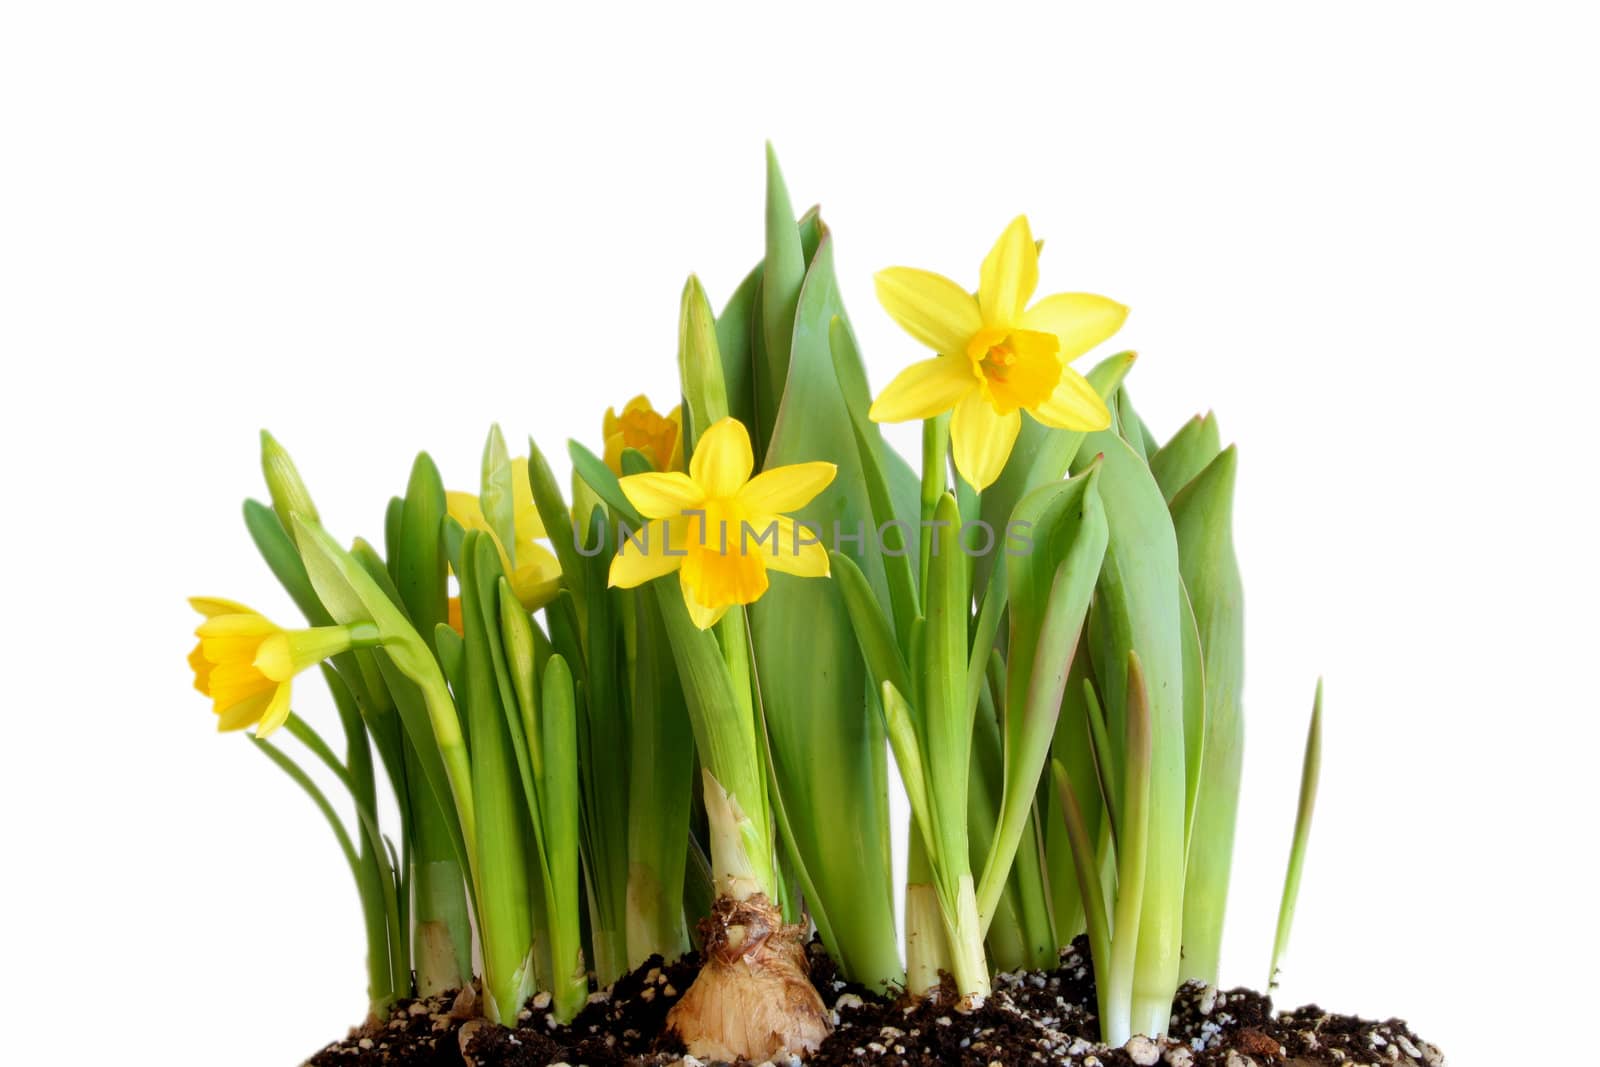 Daffodils by thephotoguy